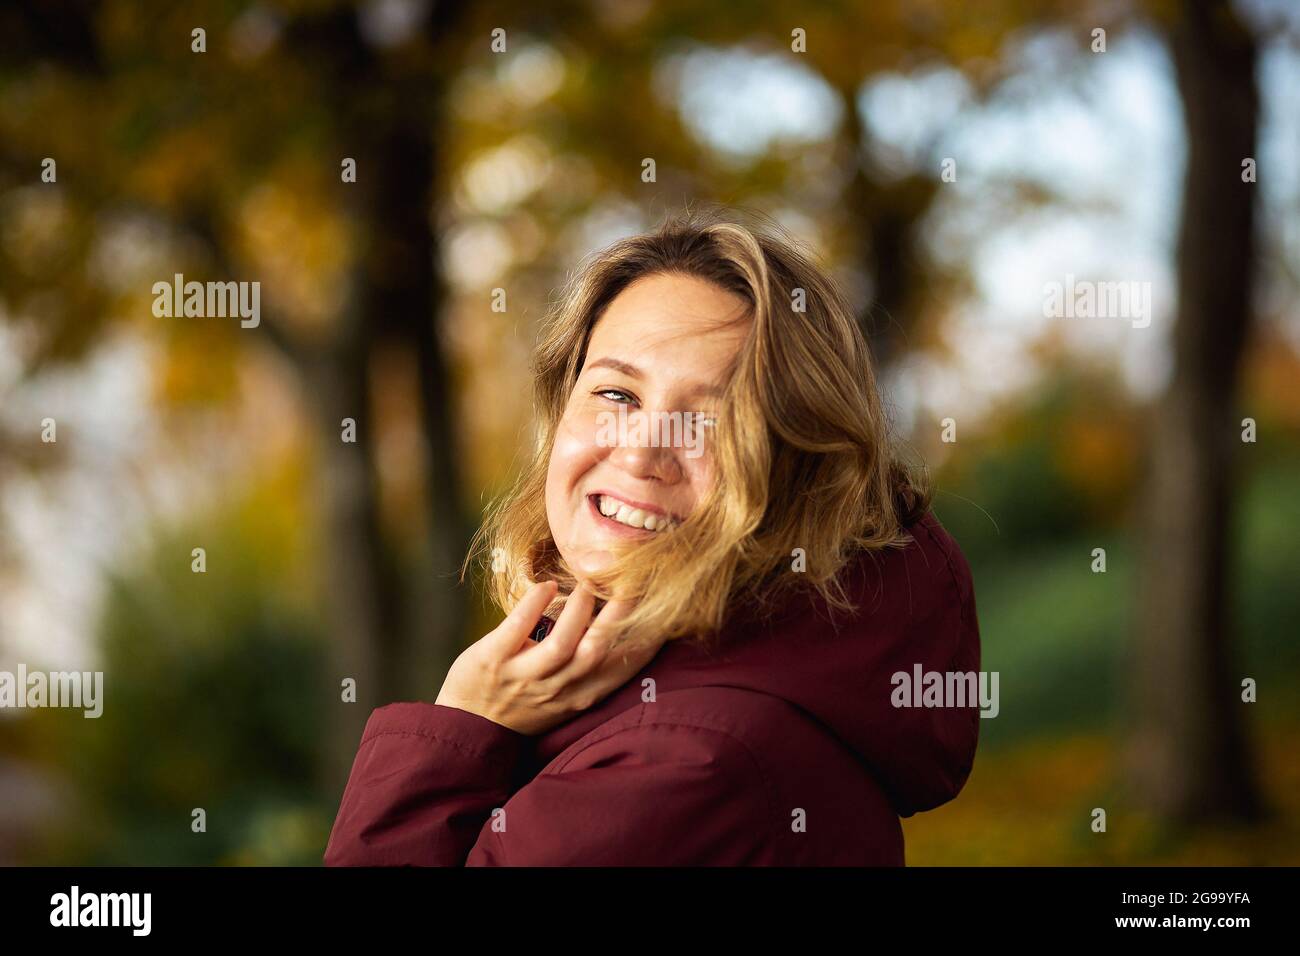 Personnes, sentiments, concept de datation saisonnière. Jeune femme ludique appréciant les feuilles jaunes d'automne dans le parc d'automne. Banque D'Images